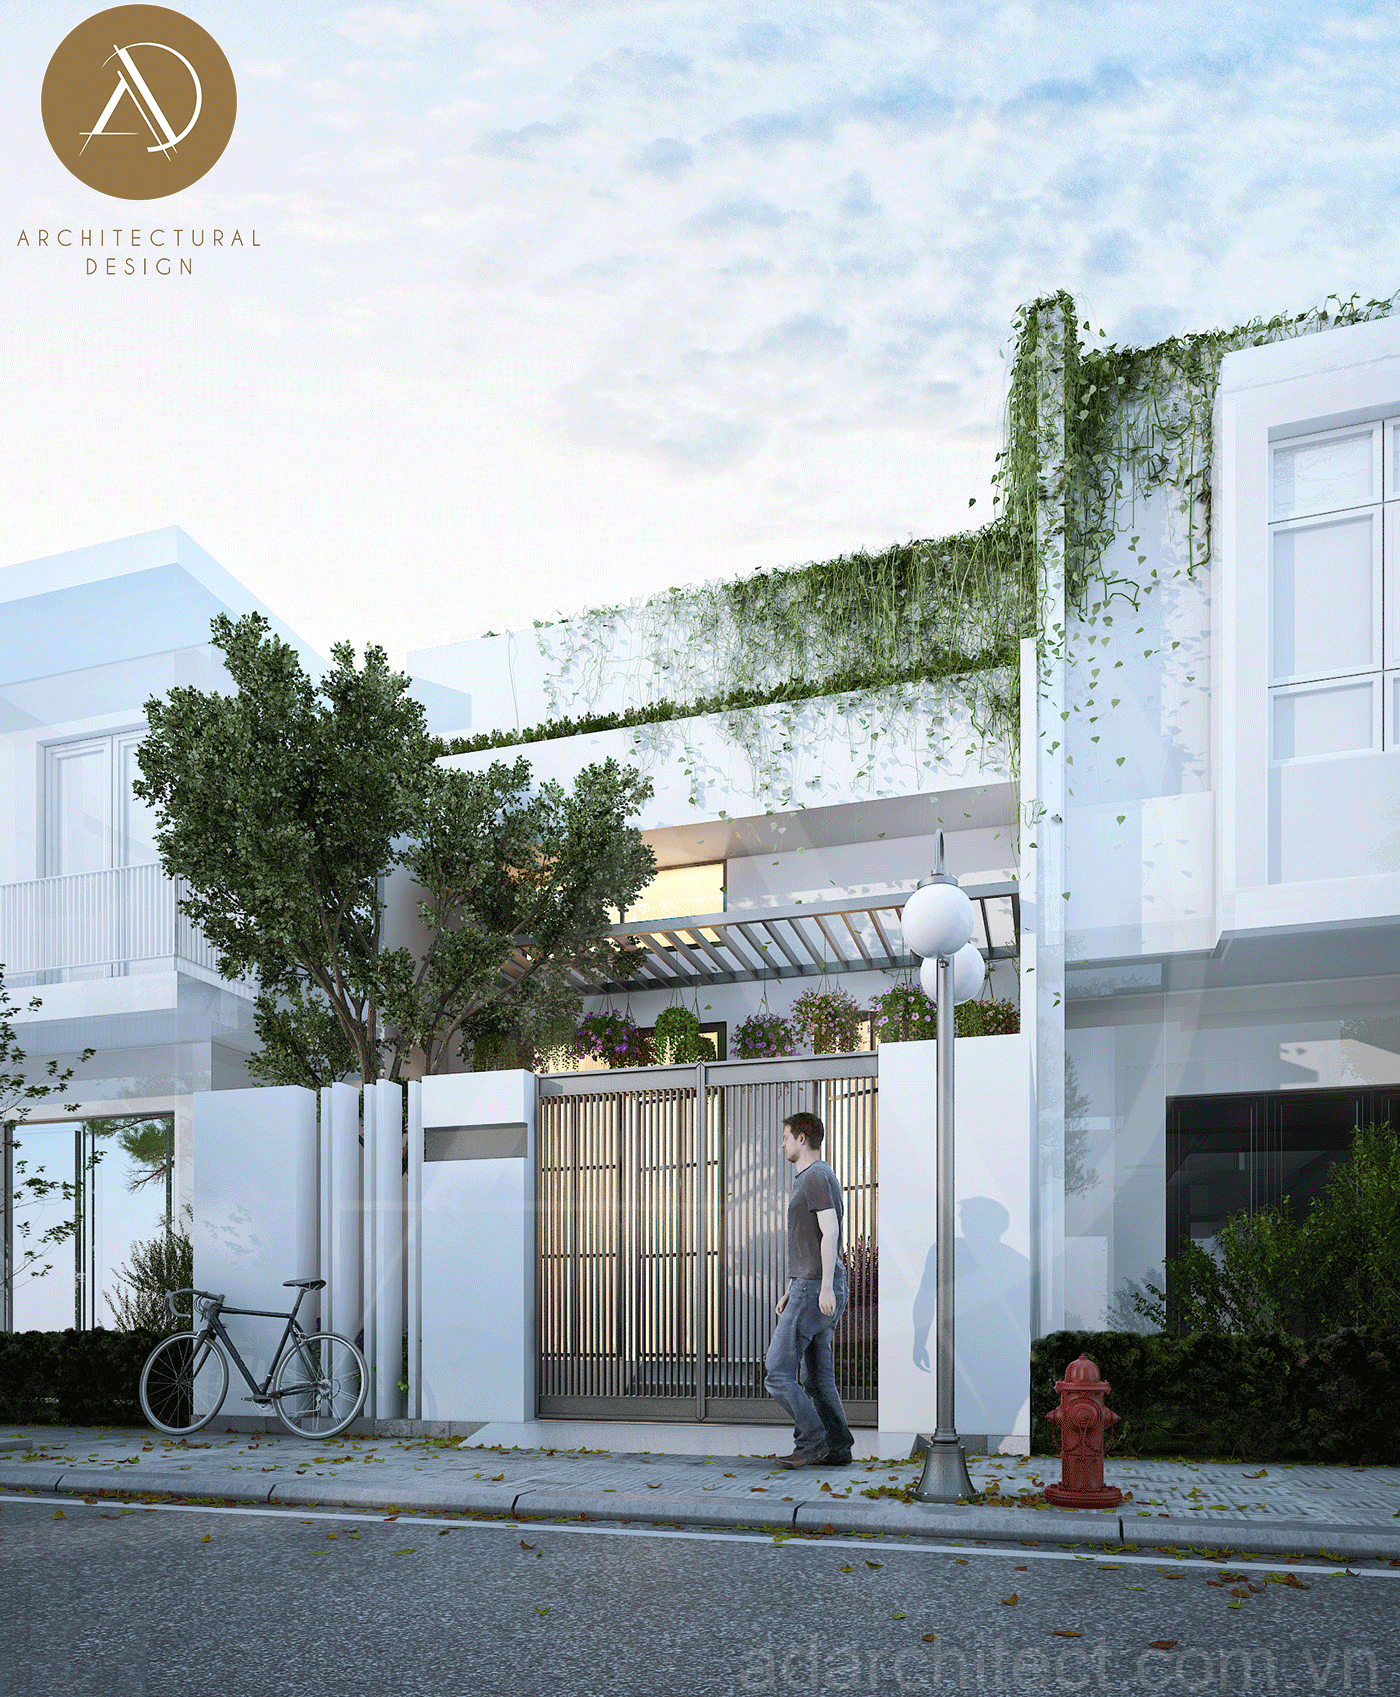 mặt tiền nhà đẹp 2 tầng: bố trí thêm cây xanh tăng khả năng lọc bụi bẩn, mang đến không gian sống trọng lành